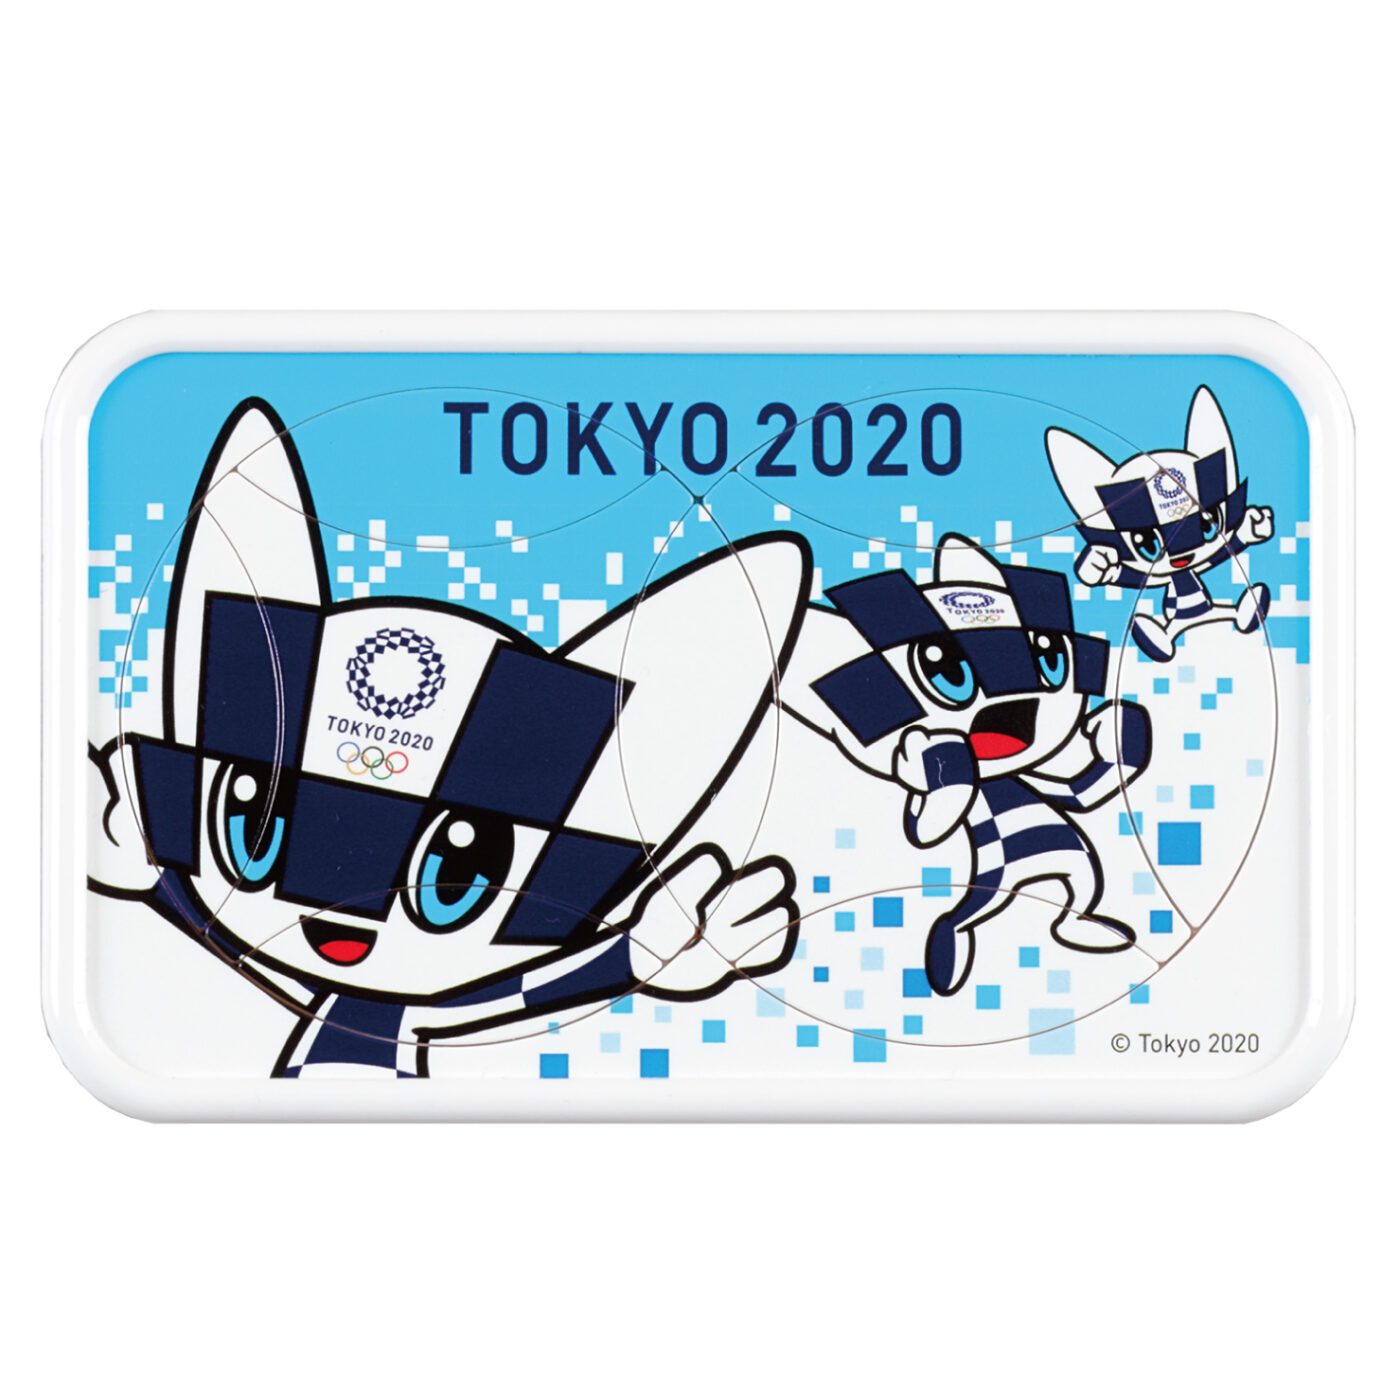 東京2020 オリンピックマスコット ミライトワ 回転絵合わせパズル02の商品画像